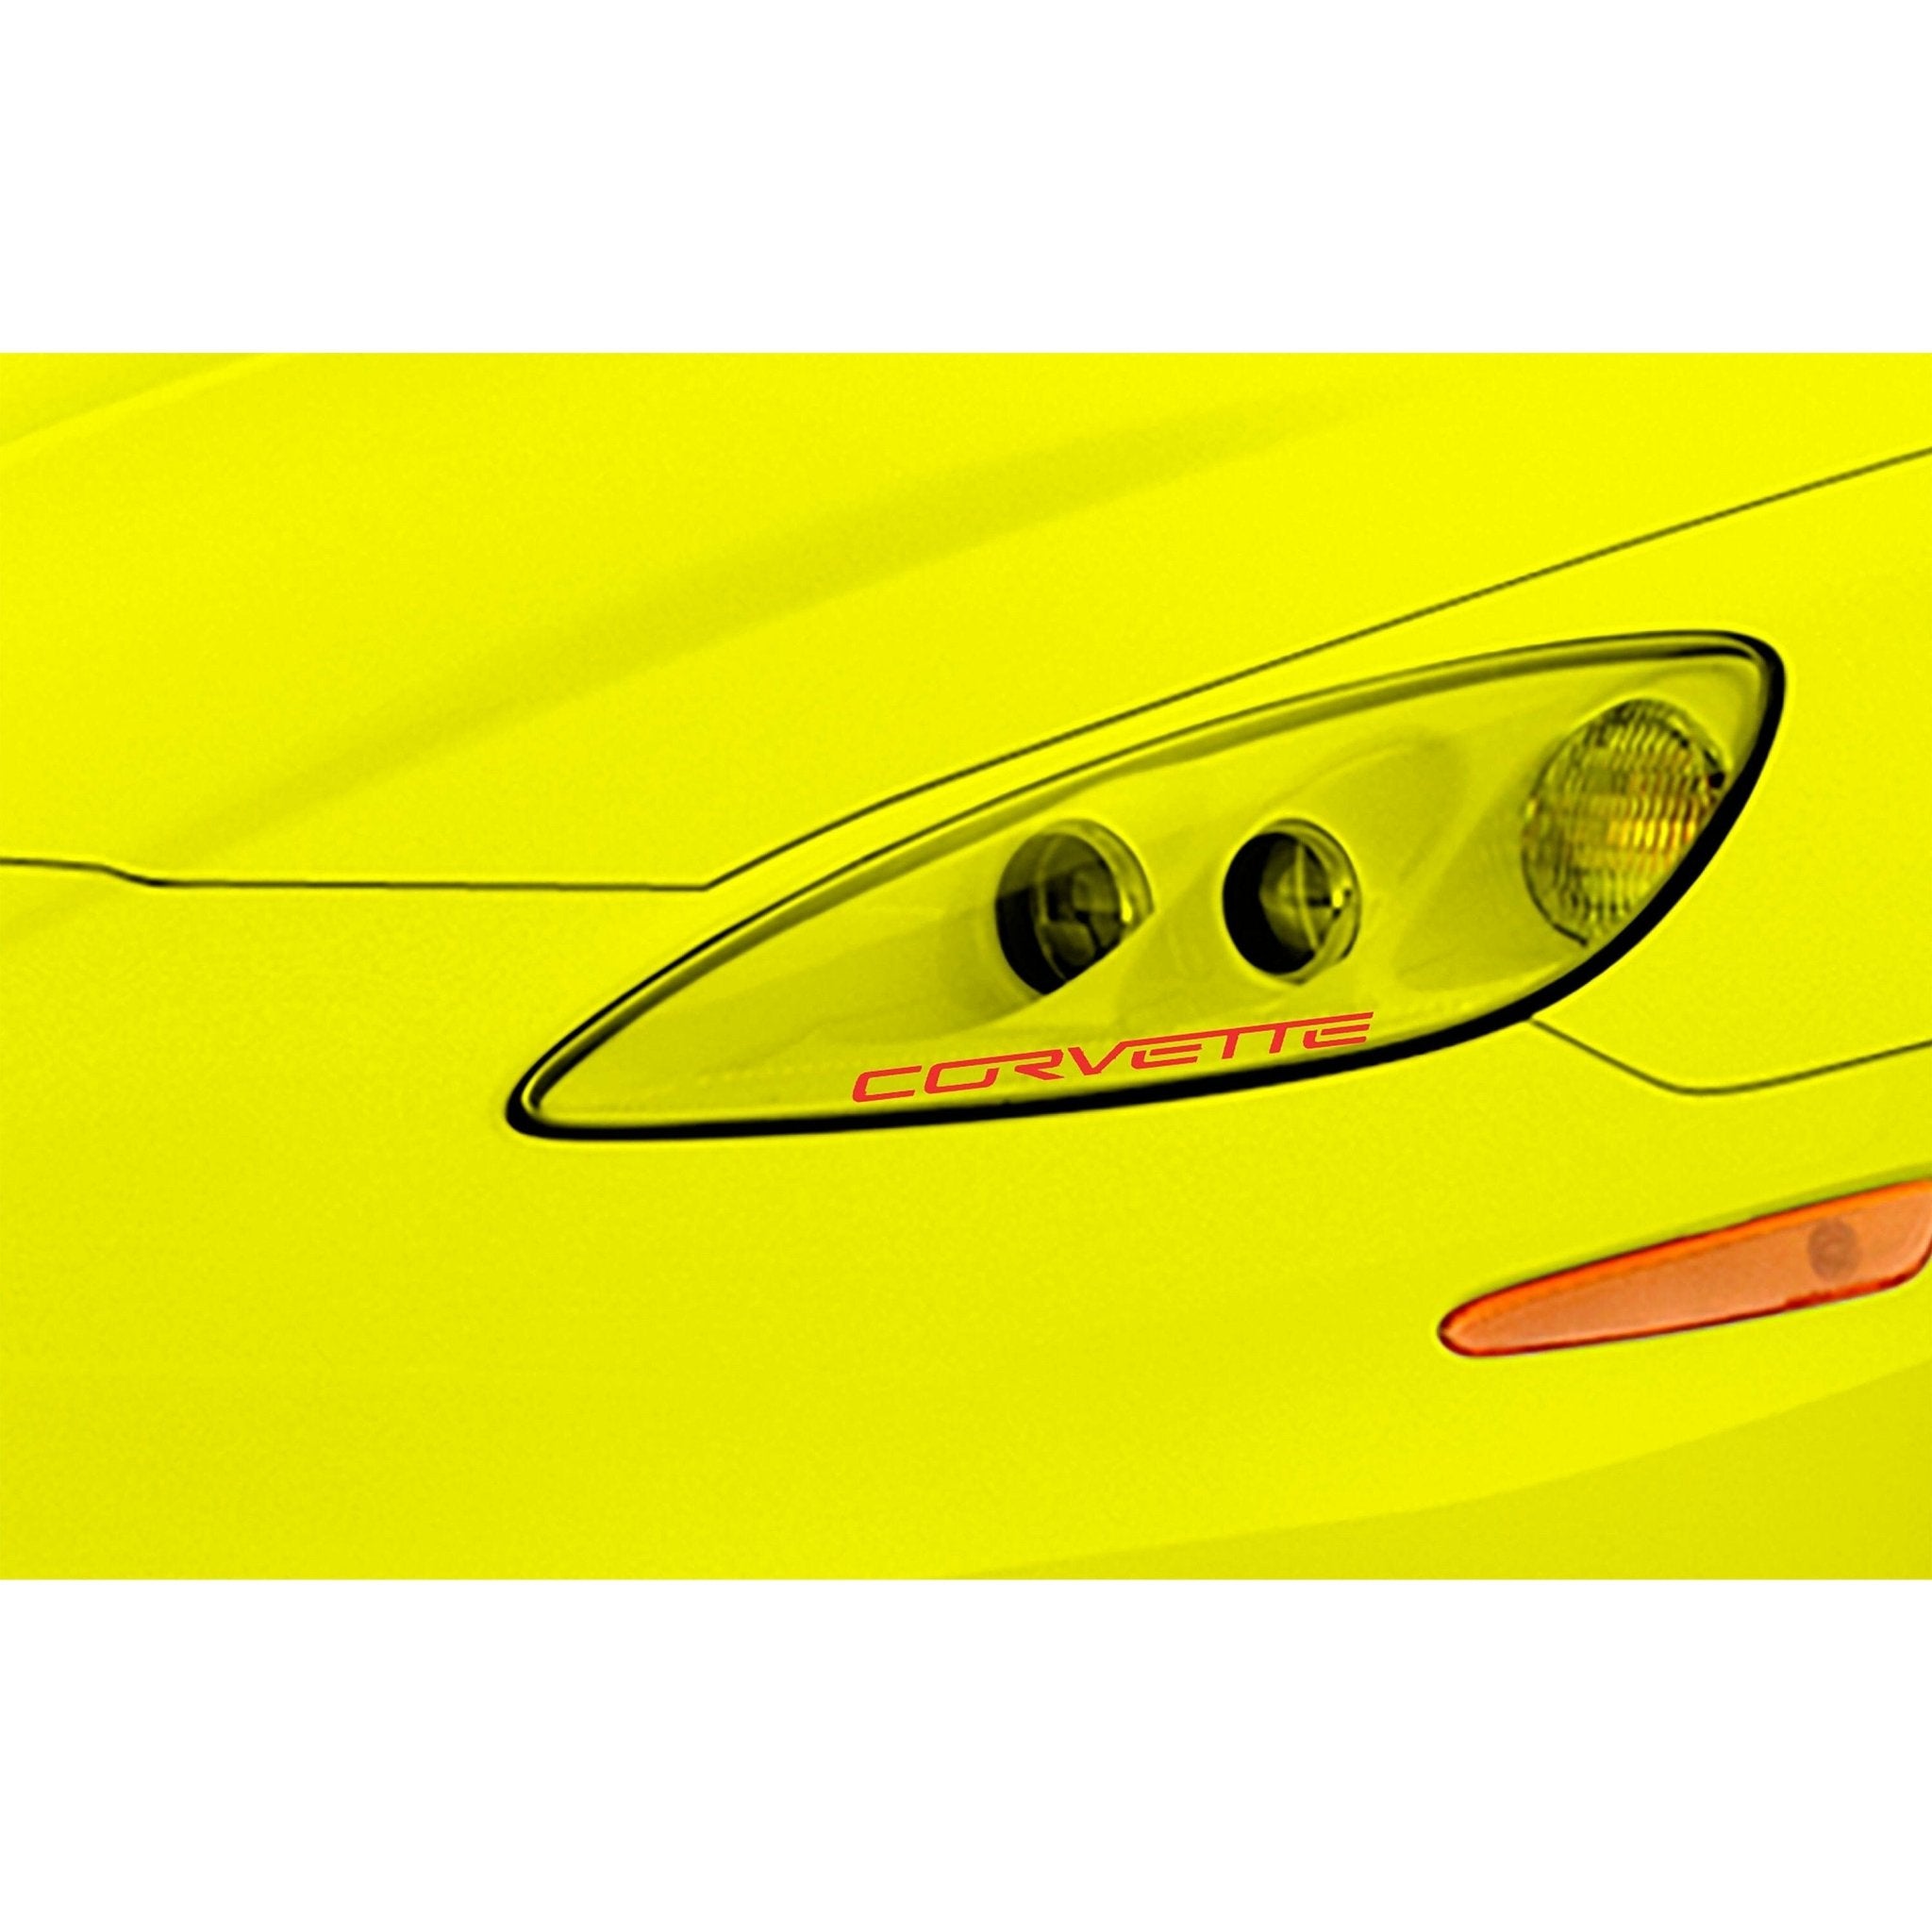 Corvette C6 Z06 Headlight Vinyl Decal Script Pair Five Colors Car Exterior Sticker - Vette1 - Body Decals